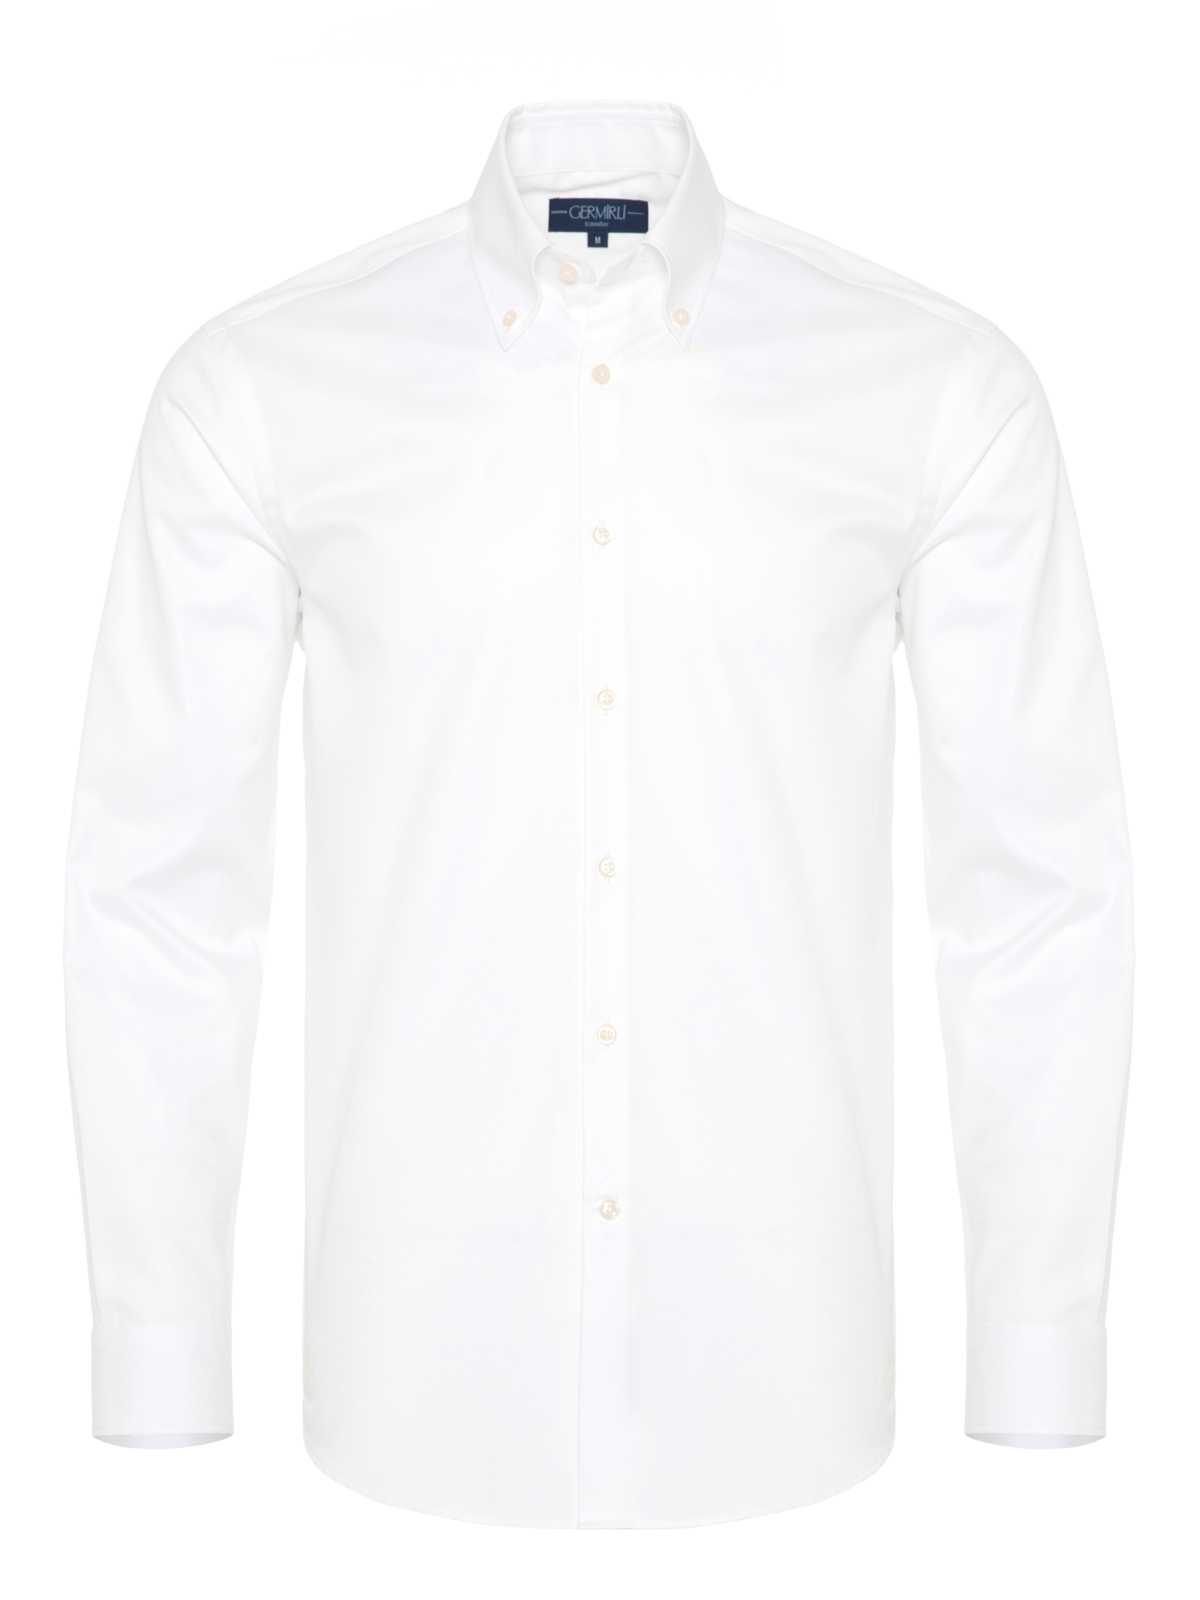 Germirli - Germirli X-Thermotech Beyaz Oxford Düğmeli Yaka Tailor Fit Gömlek